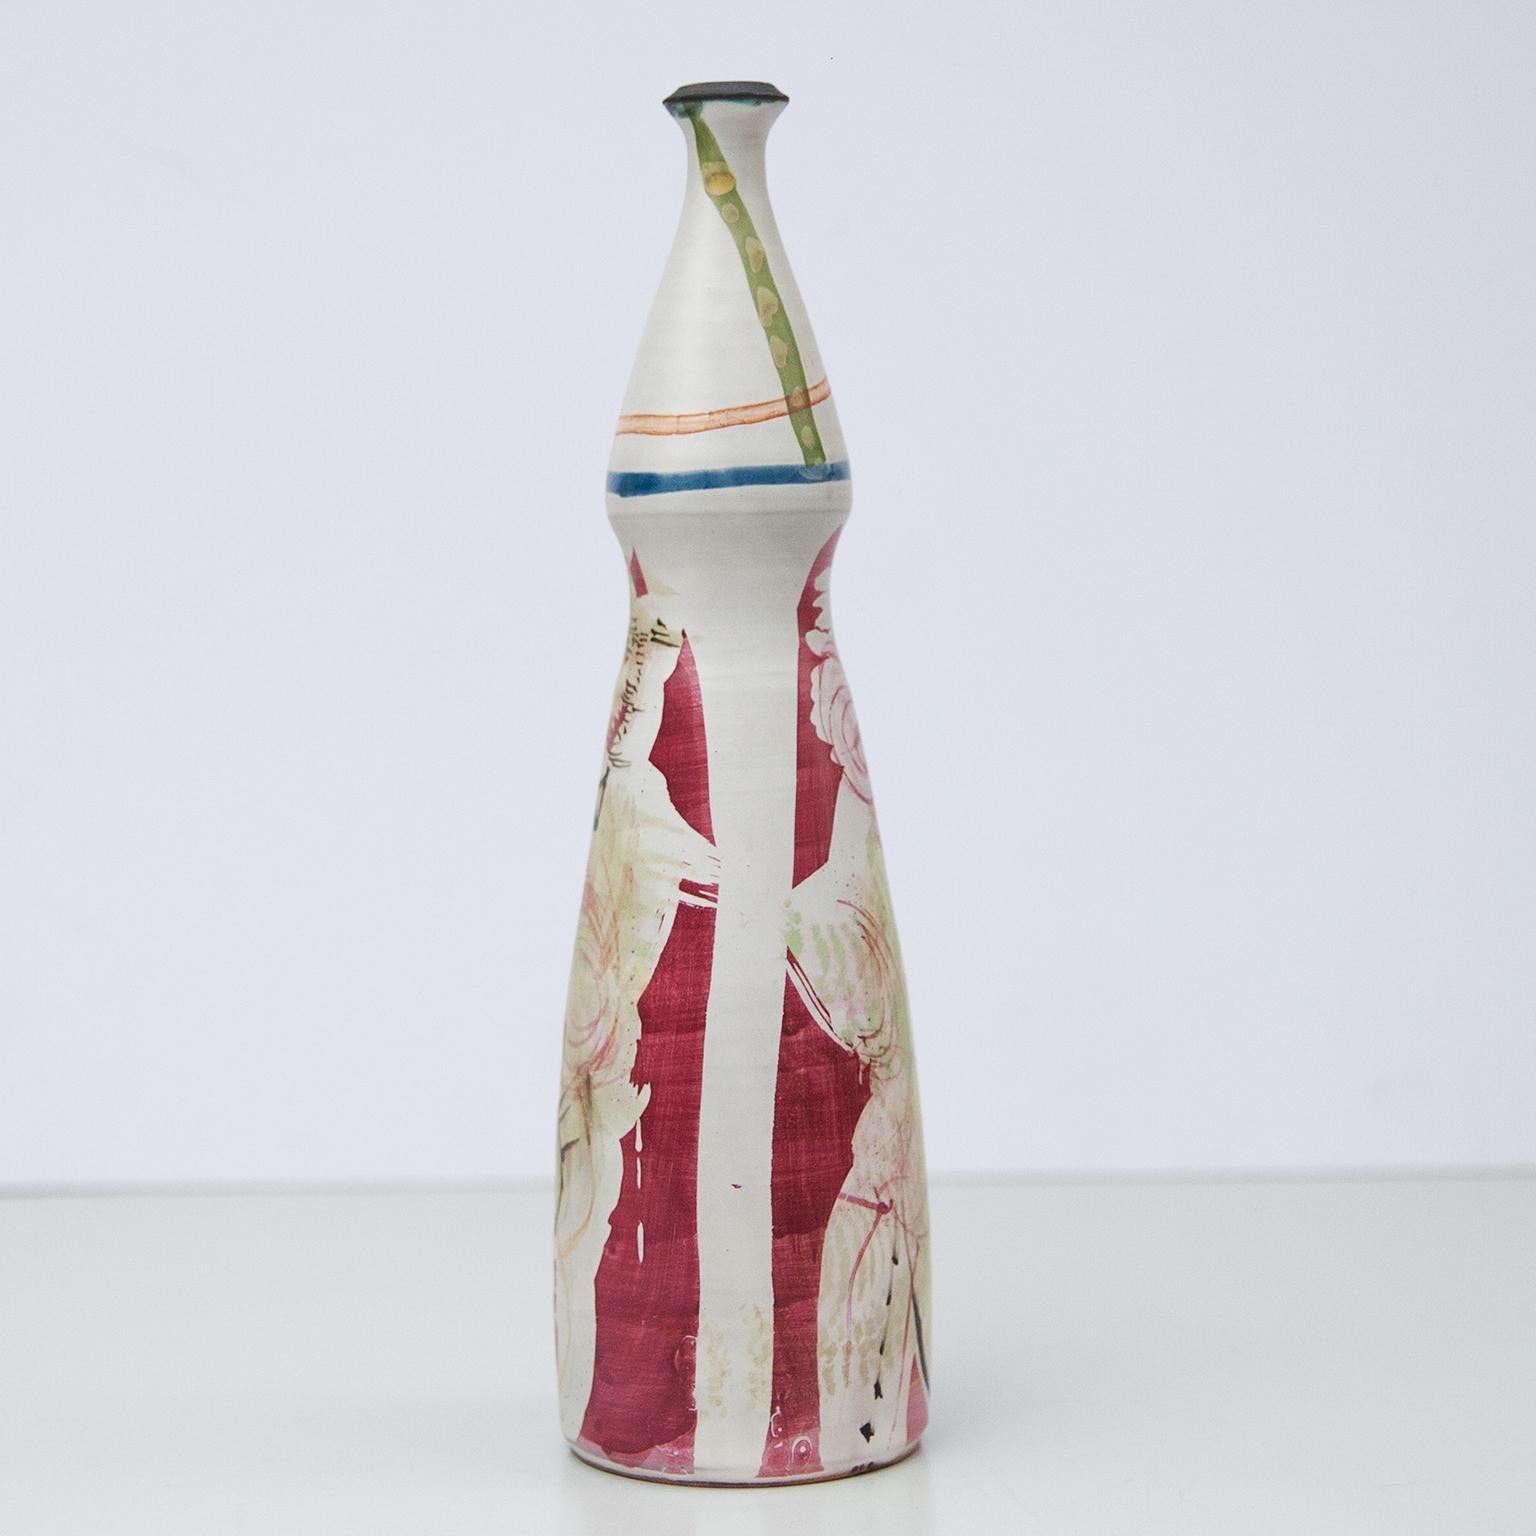 Seltene große Vase mit Flaschenhals, entworfen von Gilbert Portanier, 1982. Schöne abstrakte und kubistische Inspiration. Das Dekor ist signiert und datiert.